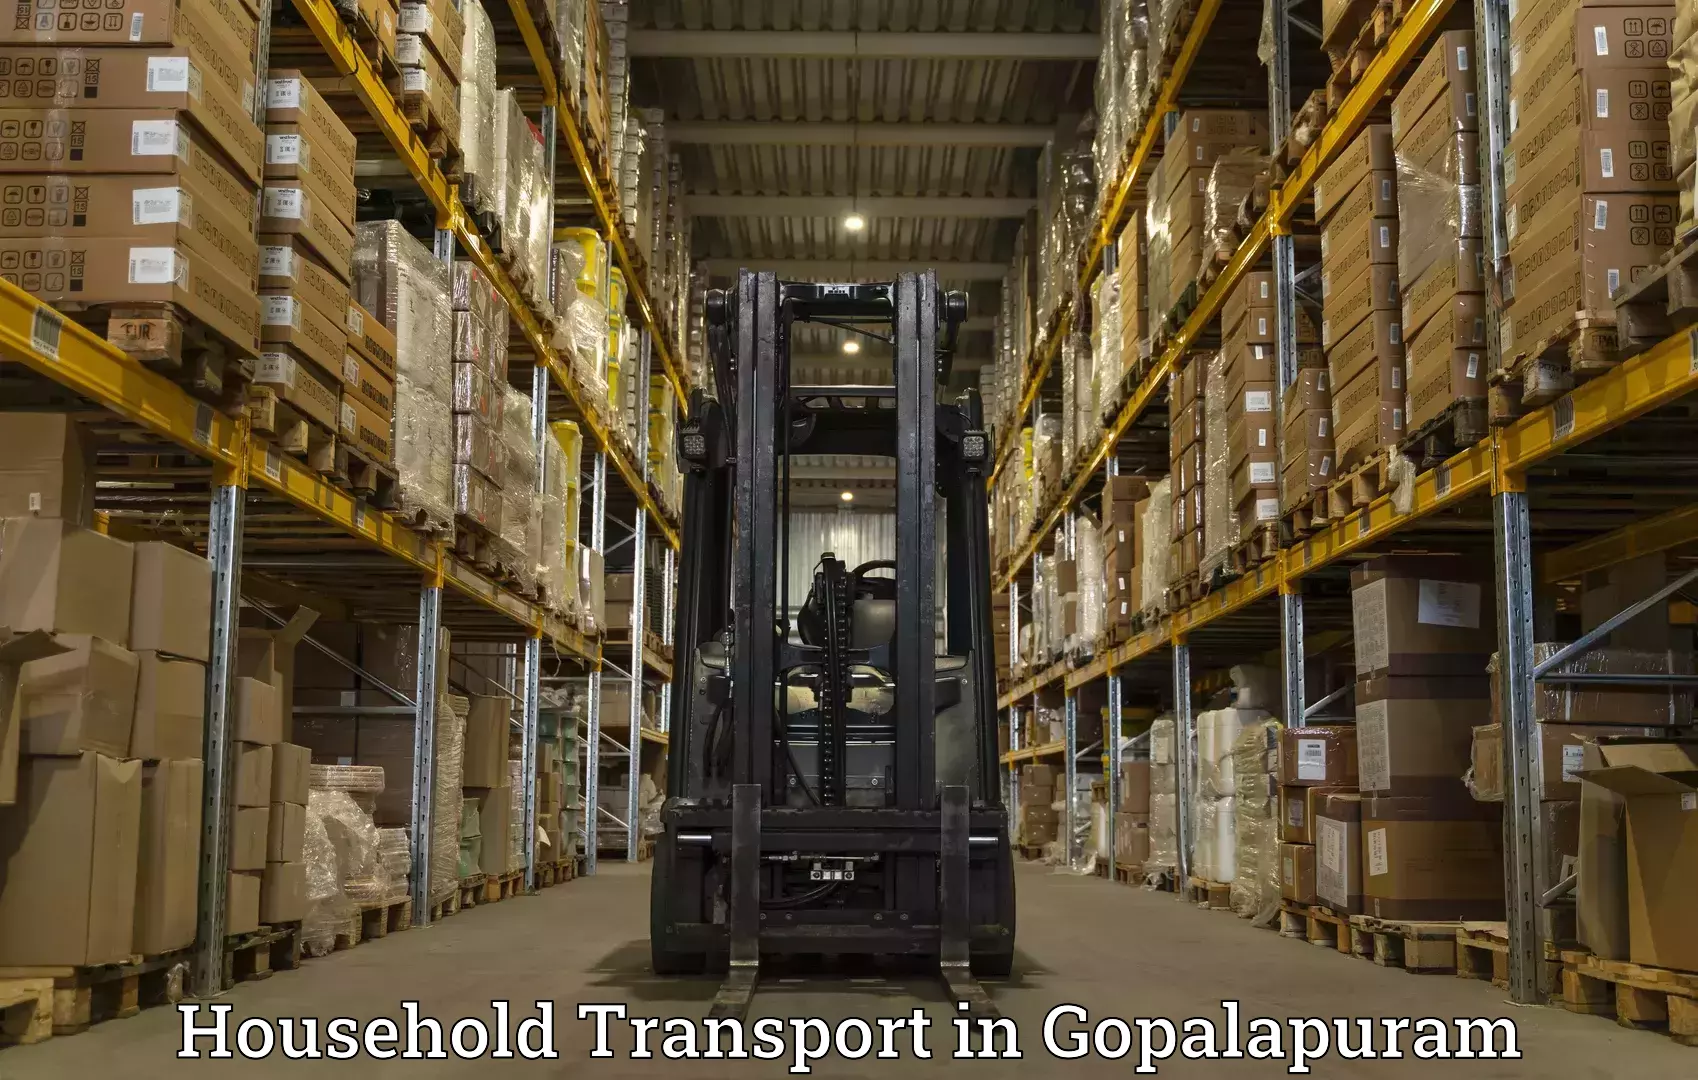 Quality household transport in Gopalapuram